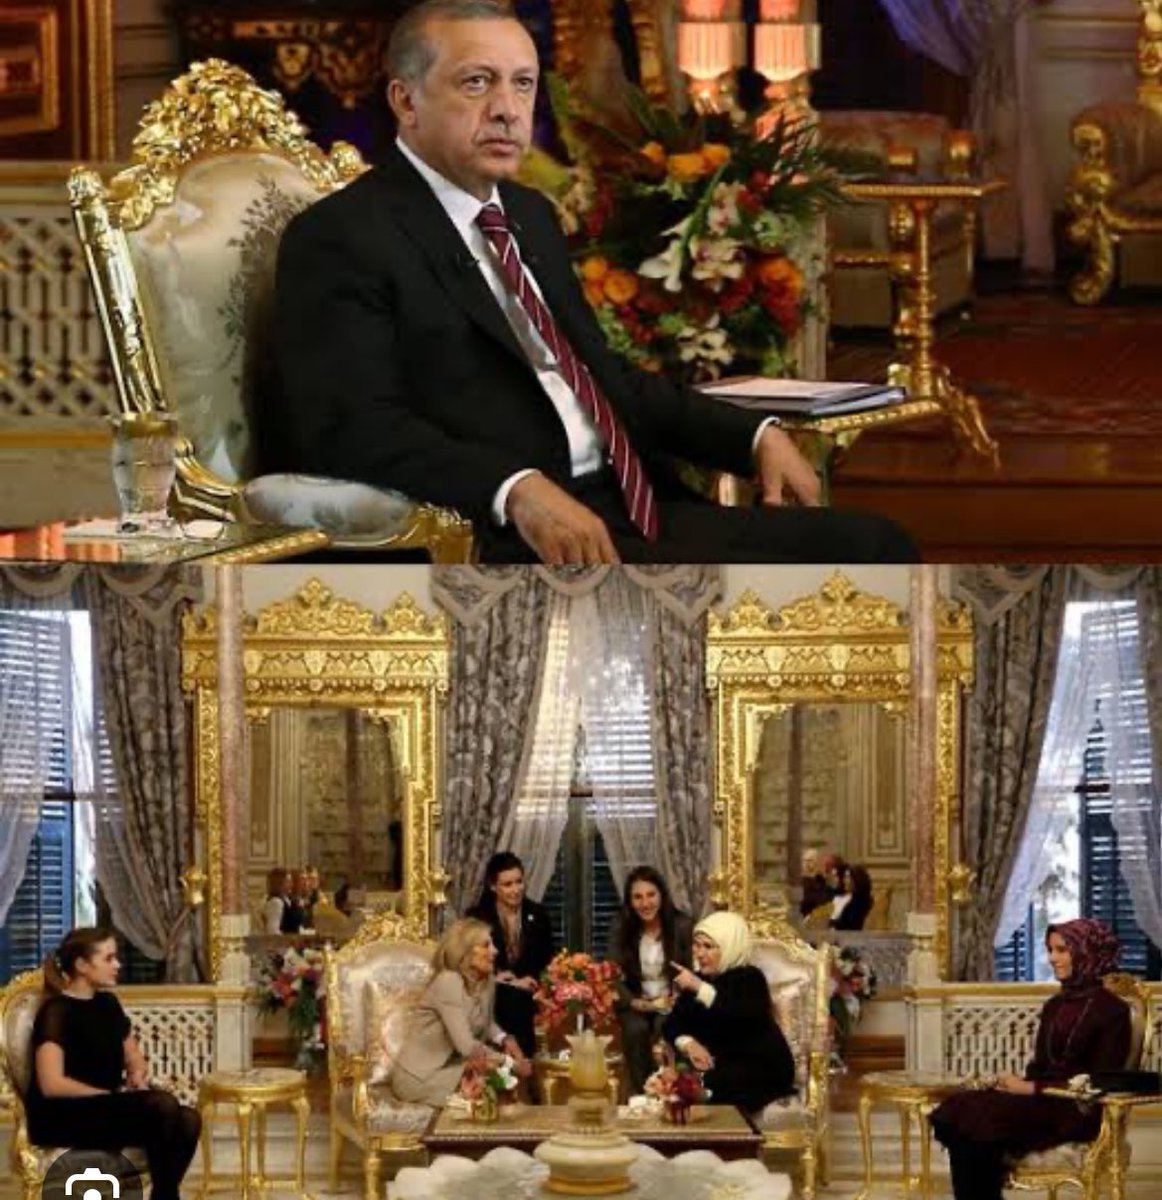 Erdoğan Ekrem İmamoğlu lüks evde yaşıyor, Benim vatandaşım çürük evde yaşıyor Saraylarda ve lüks içinde yaşayıp ülkesinin vatandaşından bi haber olanlardan bu gariban halkım sandıkta hesabını soracaktır 😃